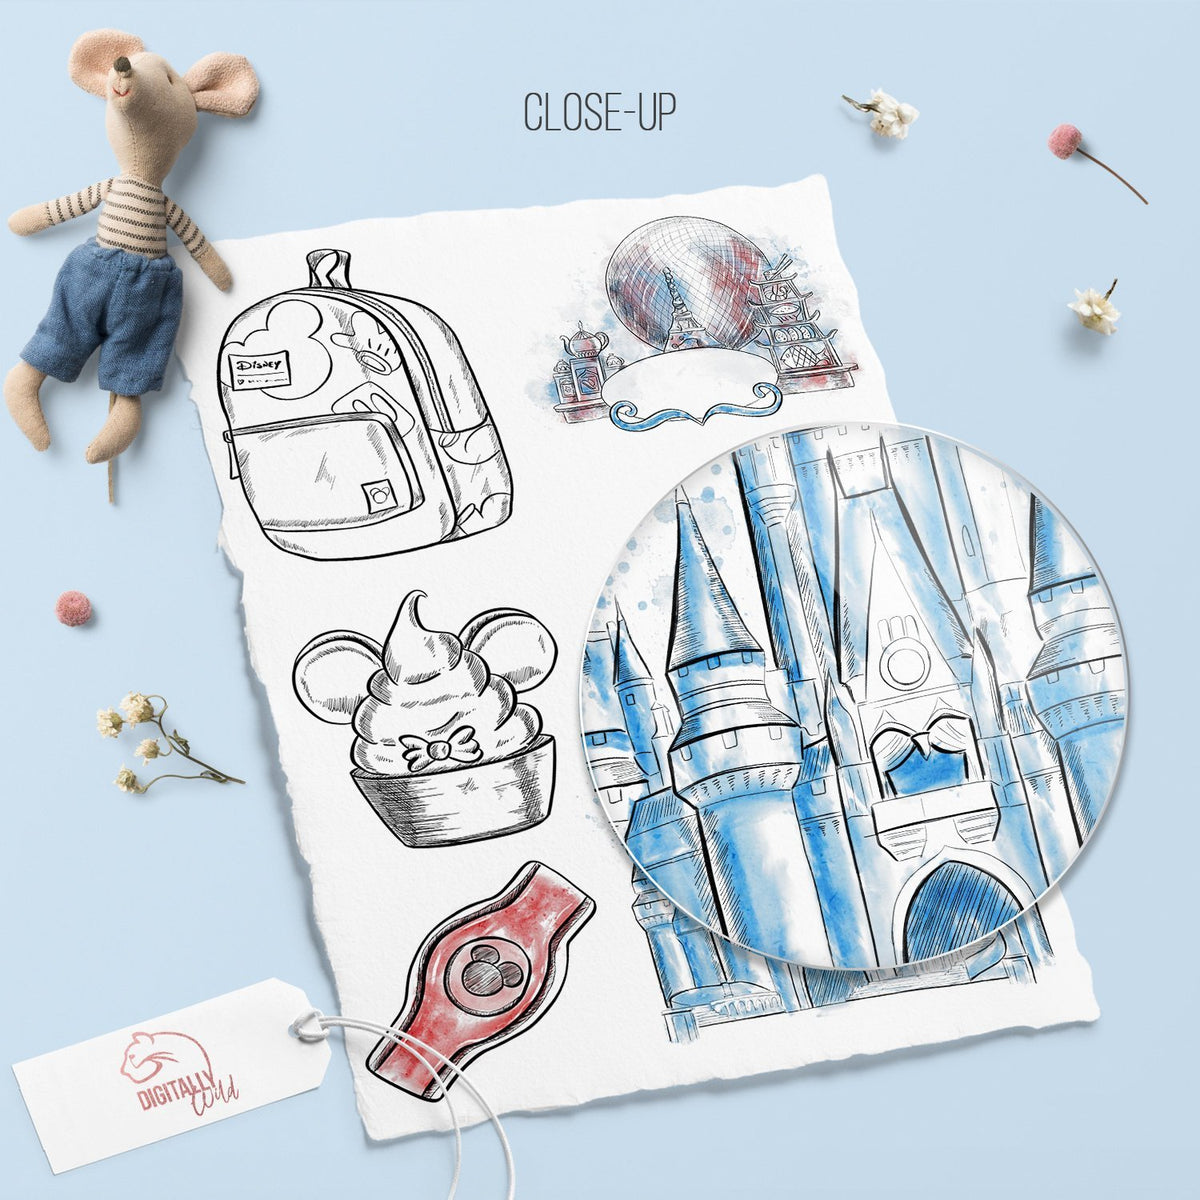 Disneyworld Digital Planner Stickers Bundle Happiest Things 